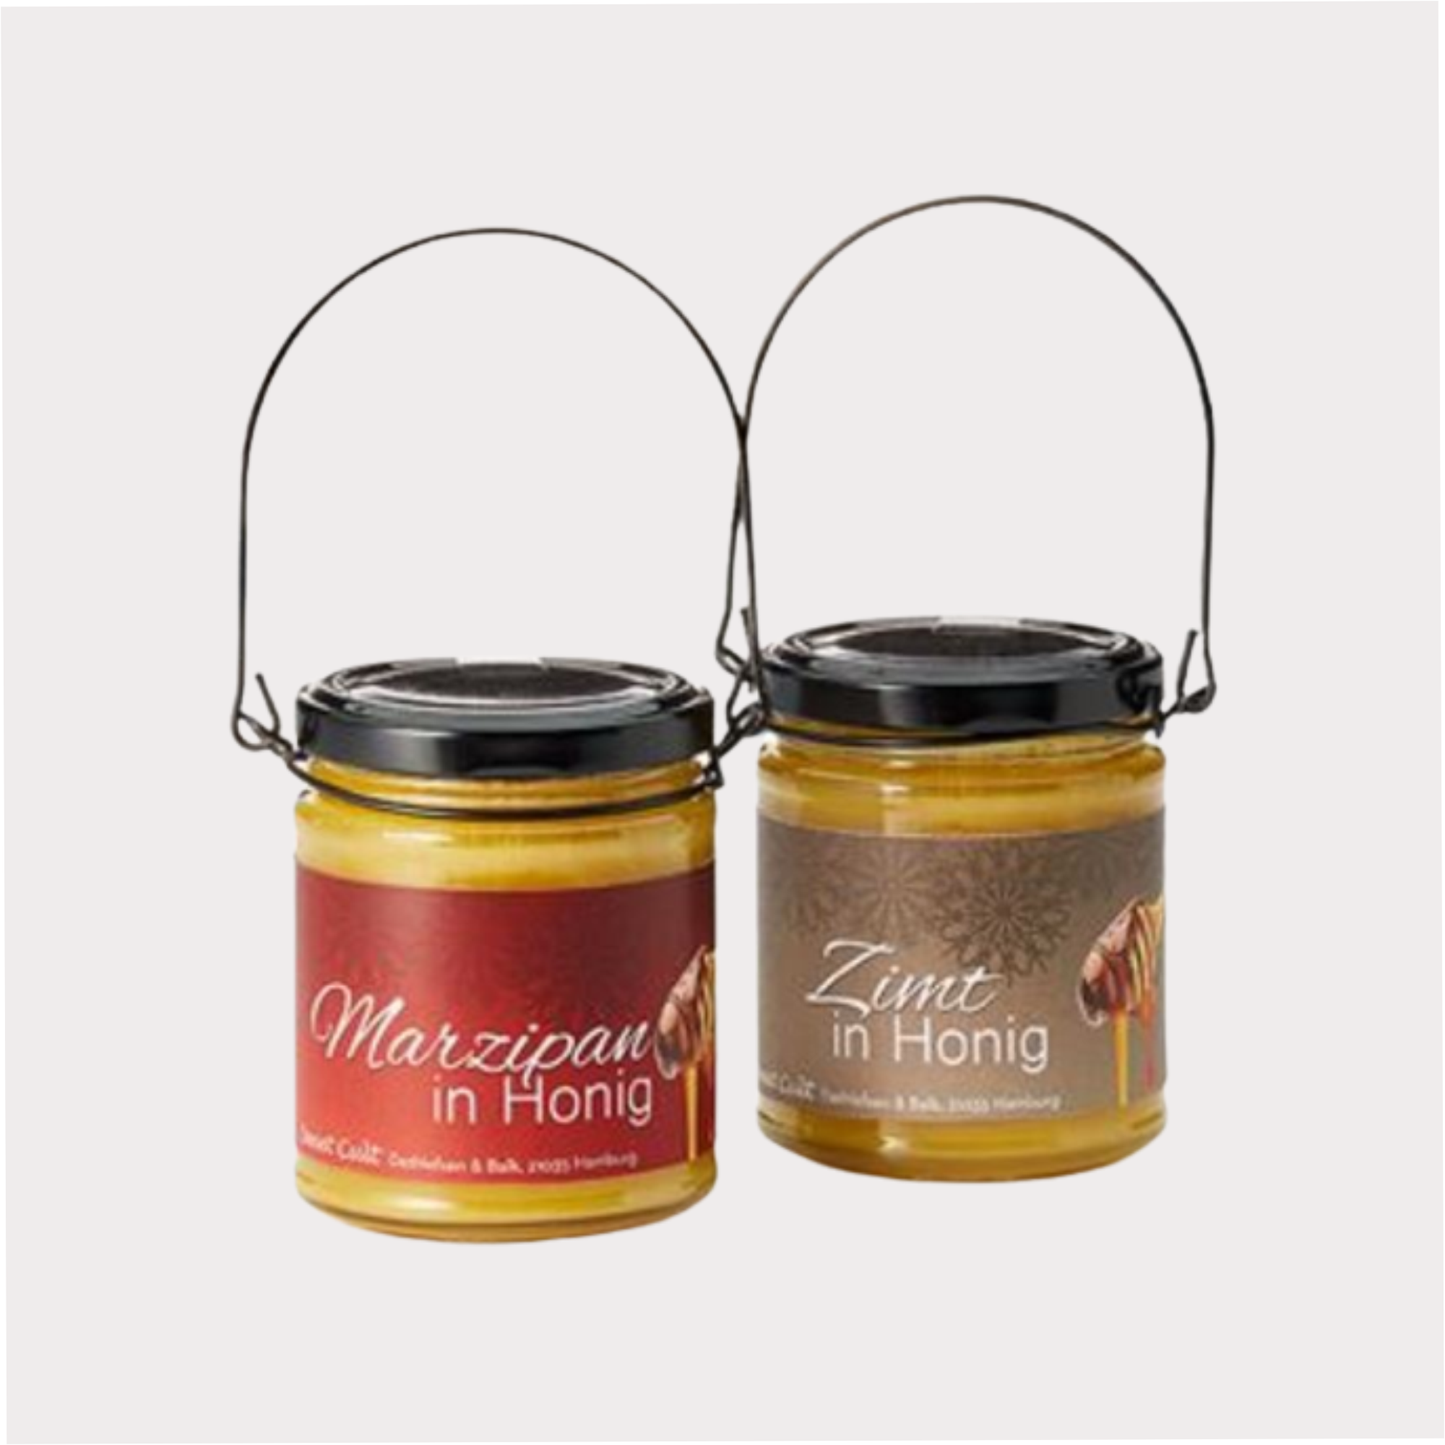 Honig im Henkelglas, 2 fach sortiert, Marzipan und Zimt